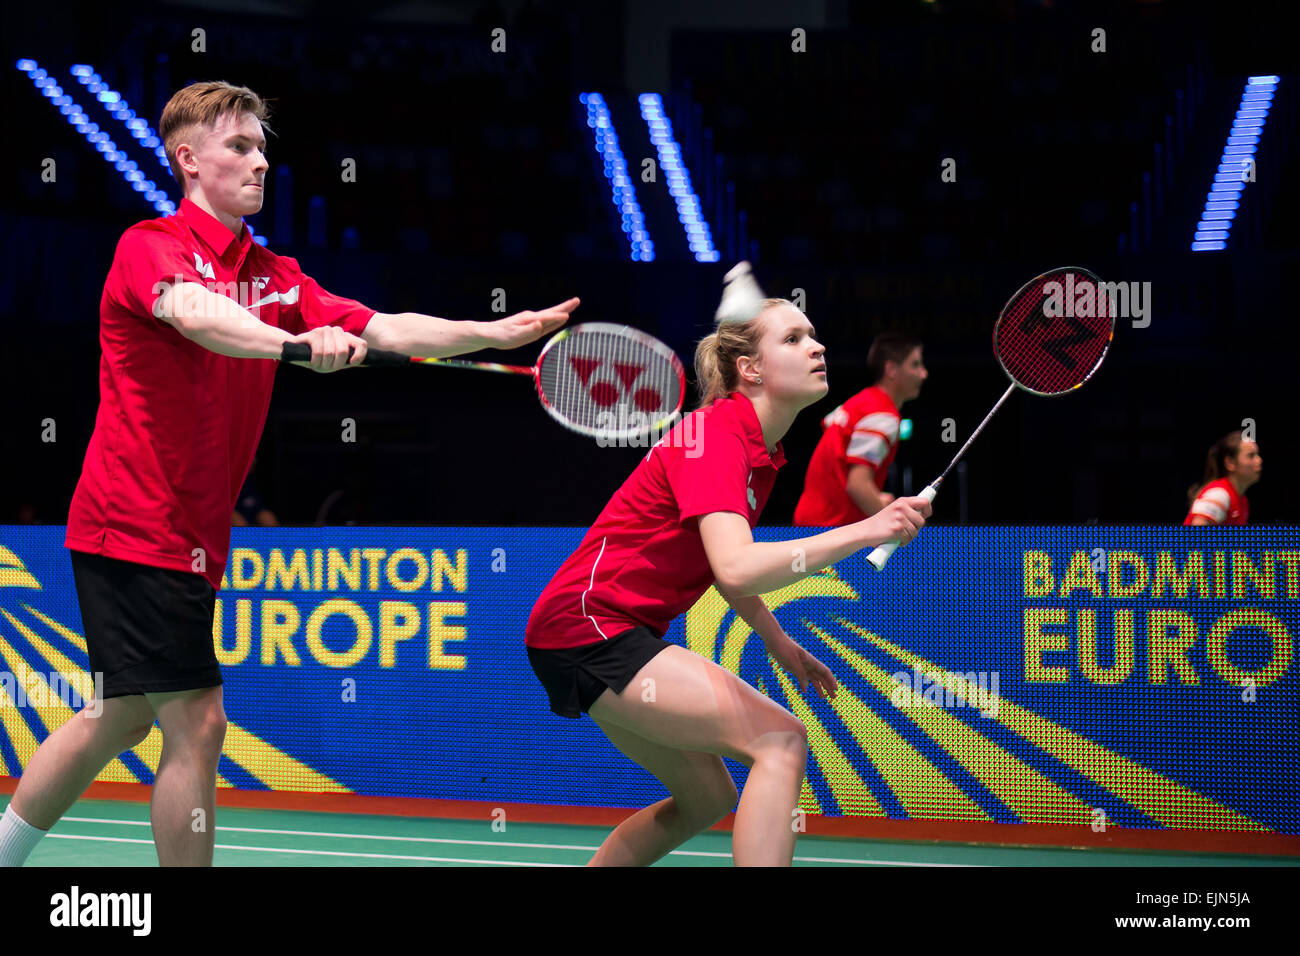 Photos Of LV's Badminton Set Go Viral